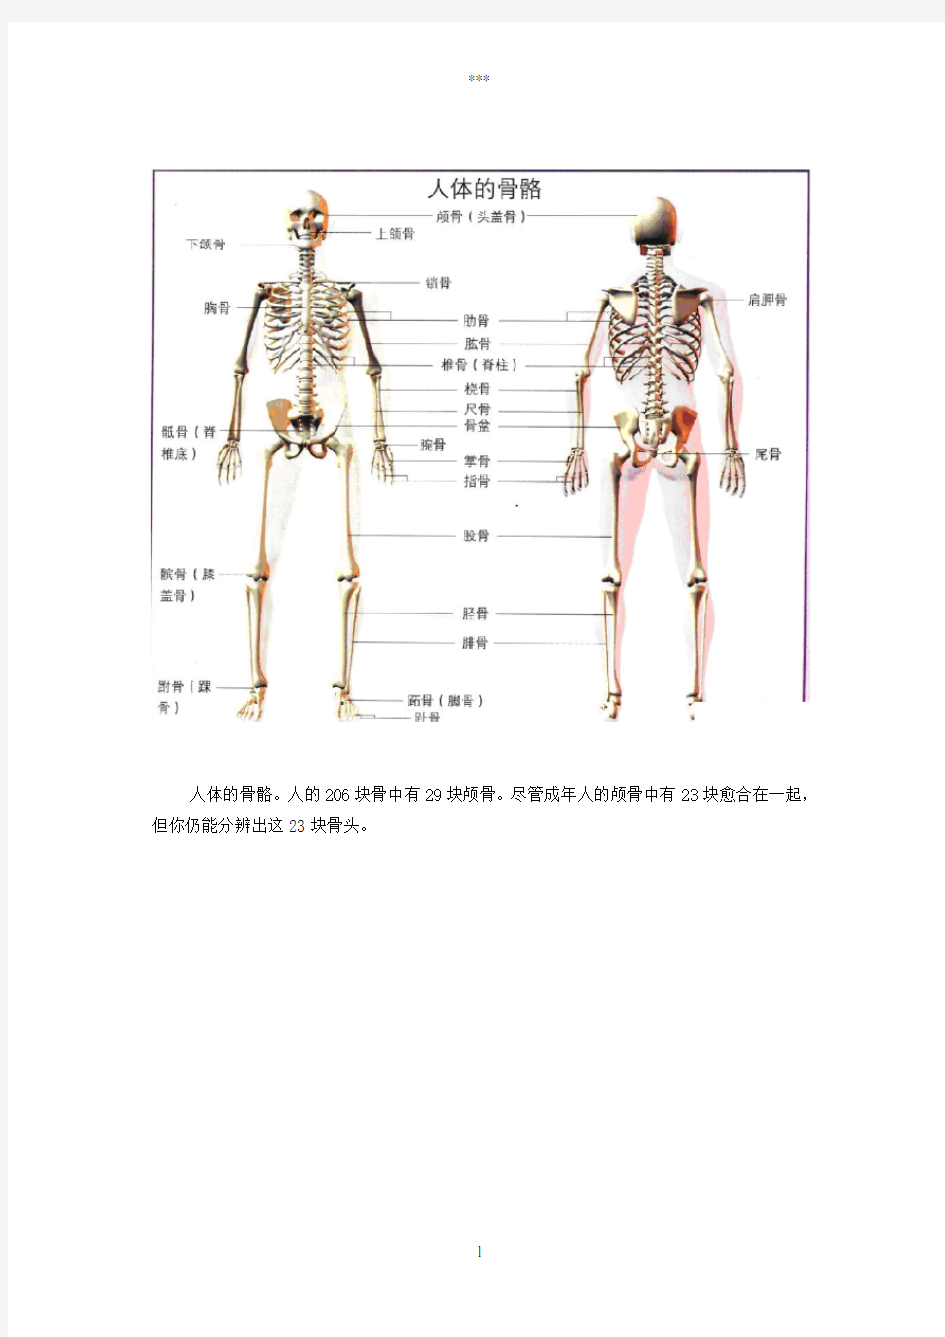 人体骨骼图(全身)-骨骼结构图